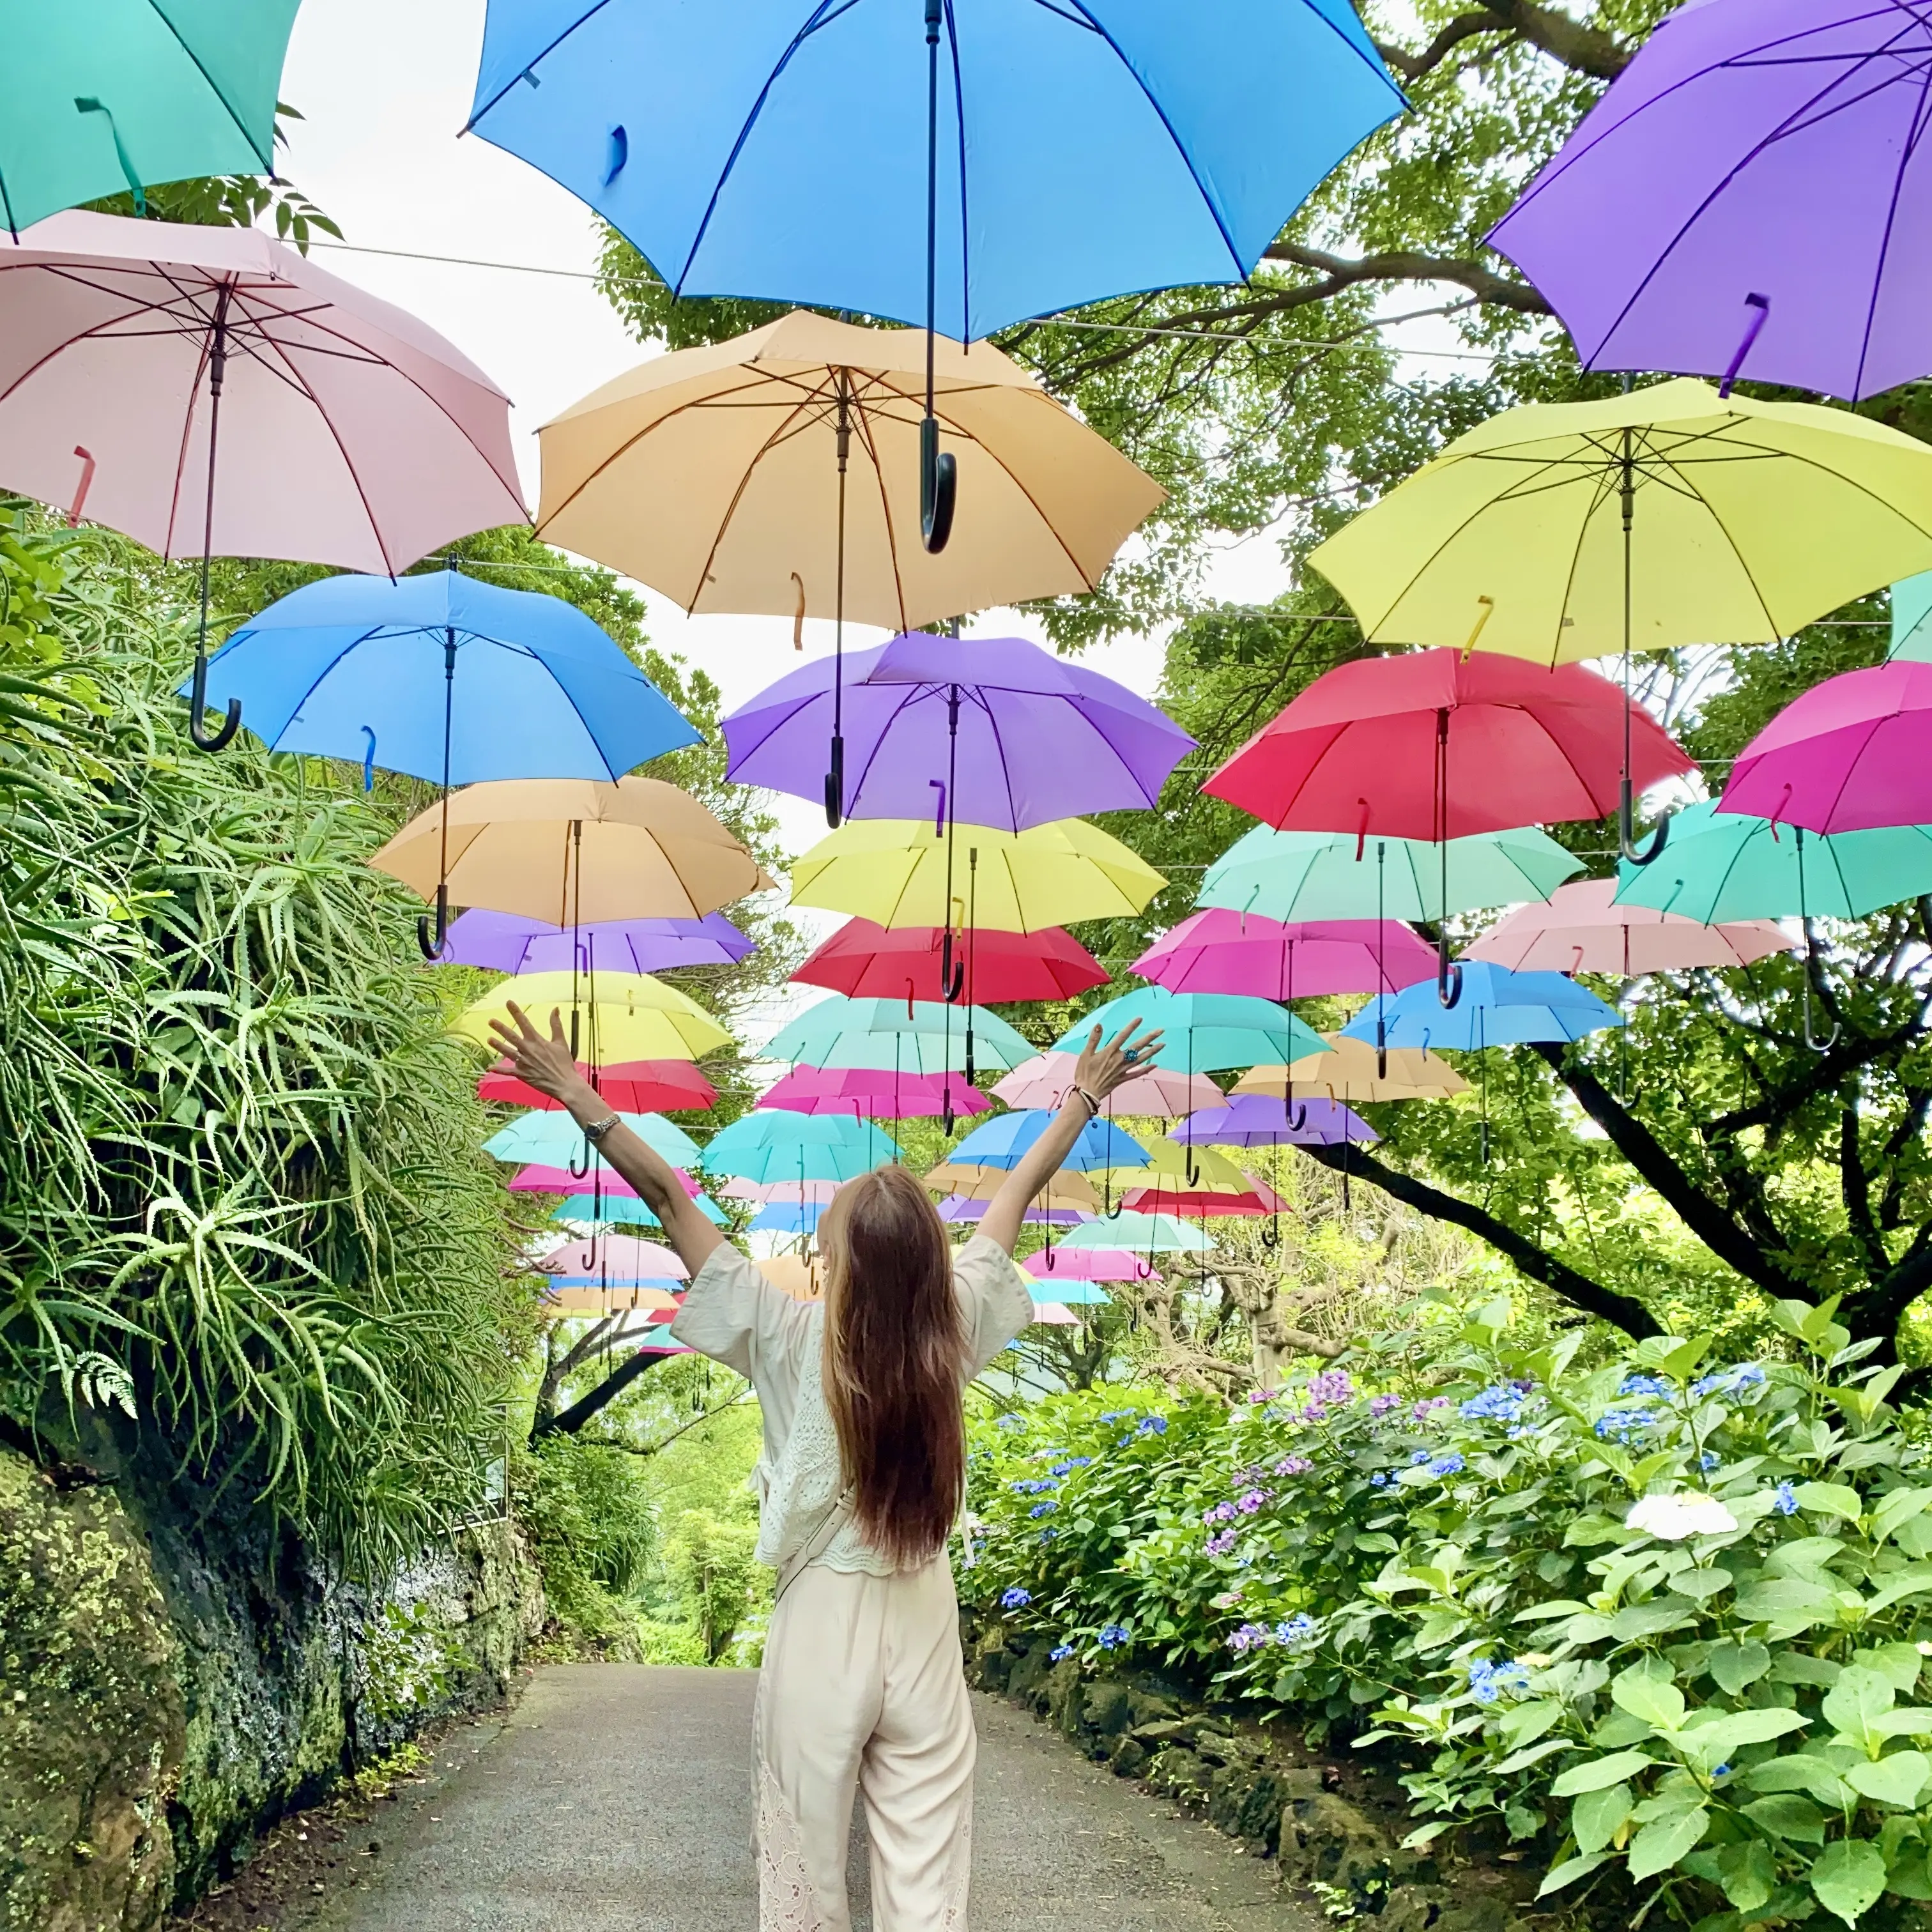 たくさんの色とりどりな傘があって綺麗